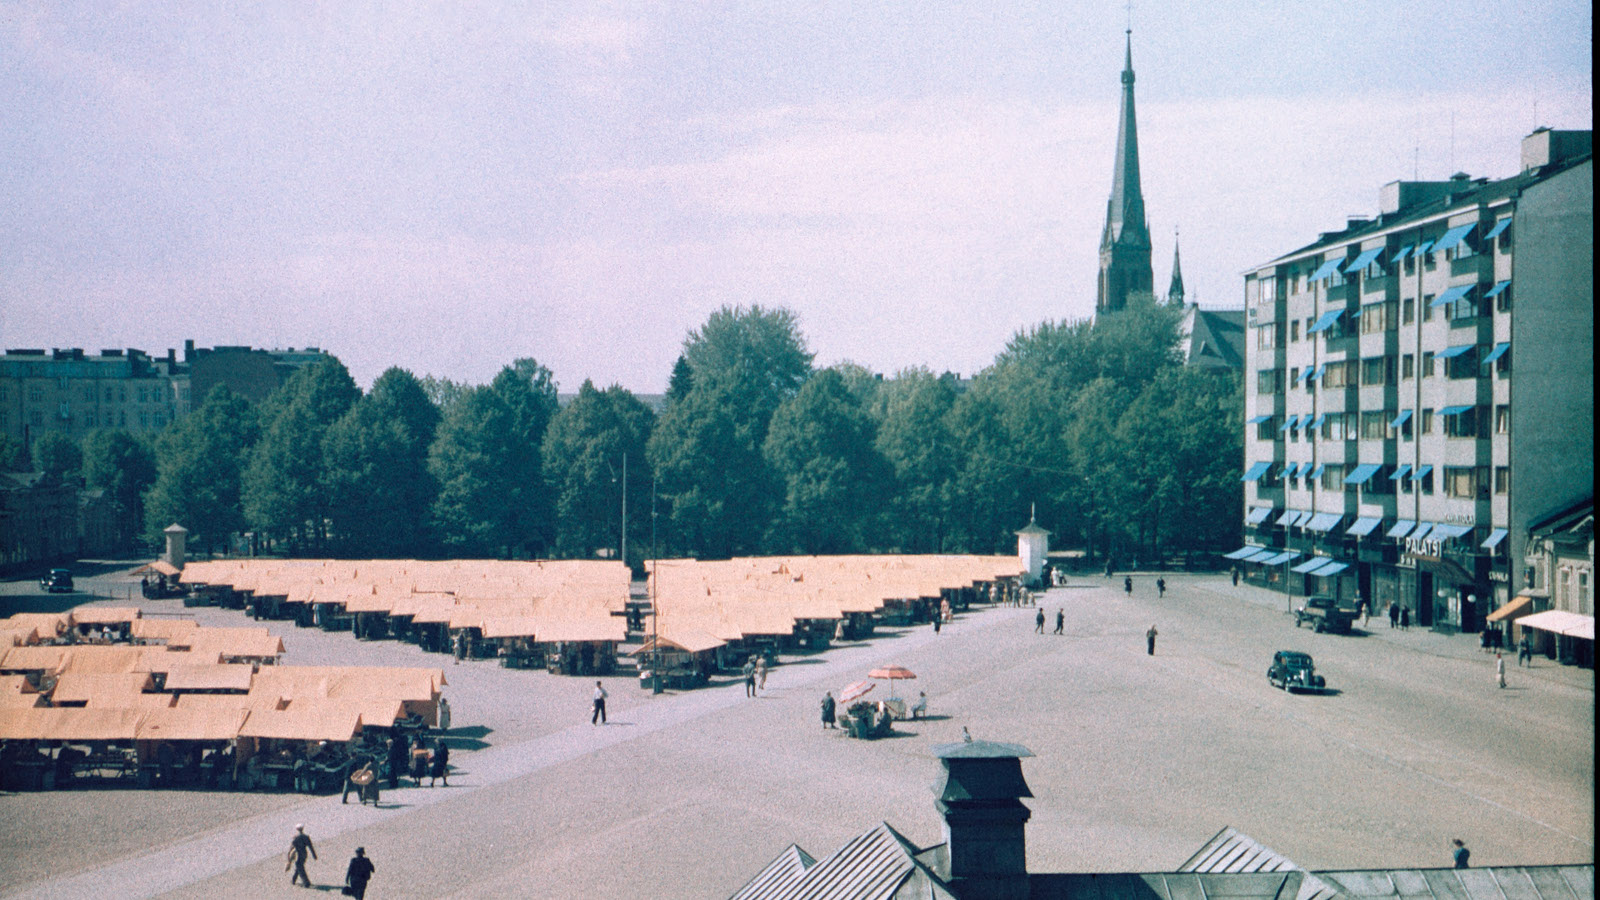 Kuvassa on Punaisenlähteen tori Viipurissa ja se on täynnä myyntikojujen telttakattoja ja taustalla näkyy kirkon torni.  Oikealla on kerrostalo.  Autoja näkyy vain kaksi.